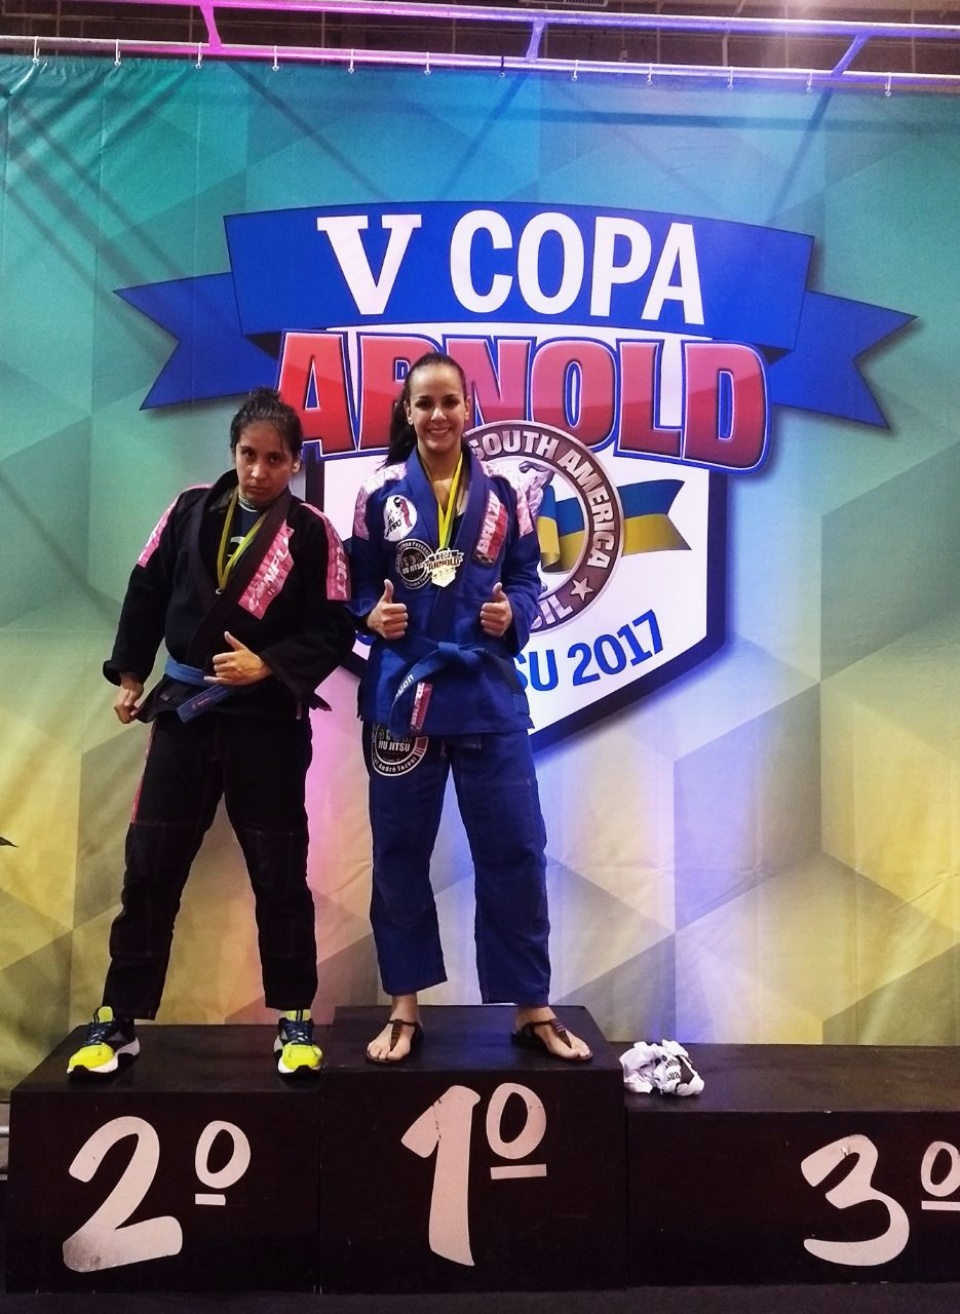 Atletas da Equipe SYON jiu jitsu de Três Lagoas conquistam Medalhas de ouro